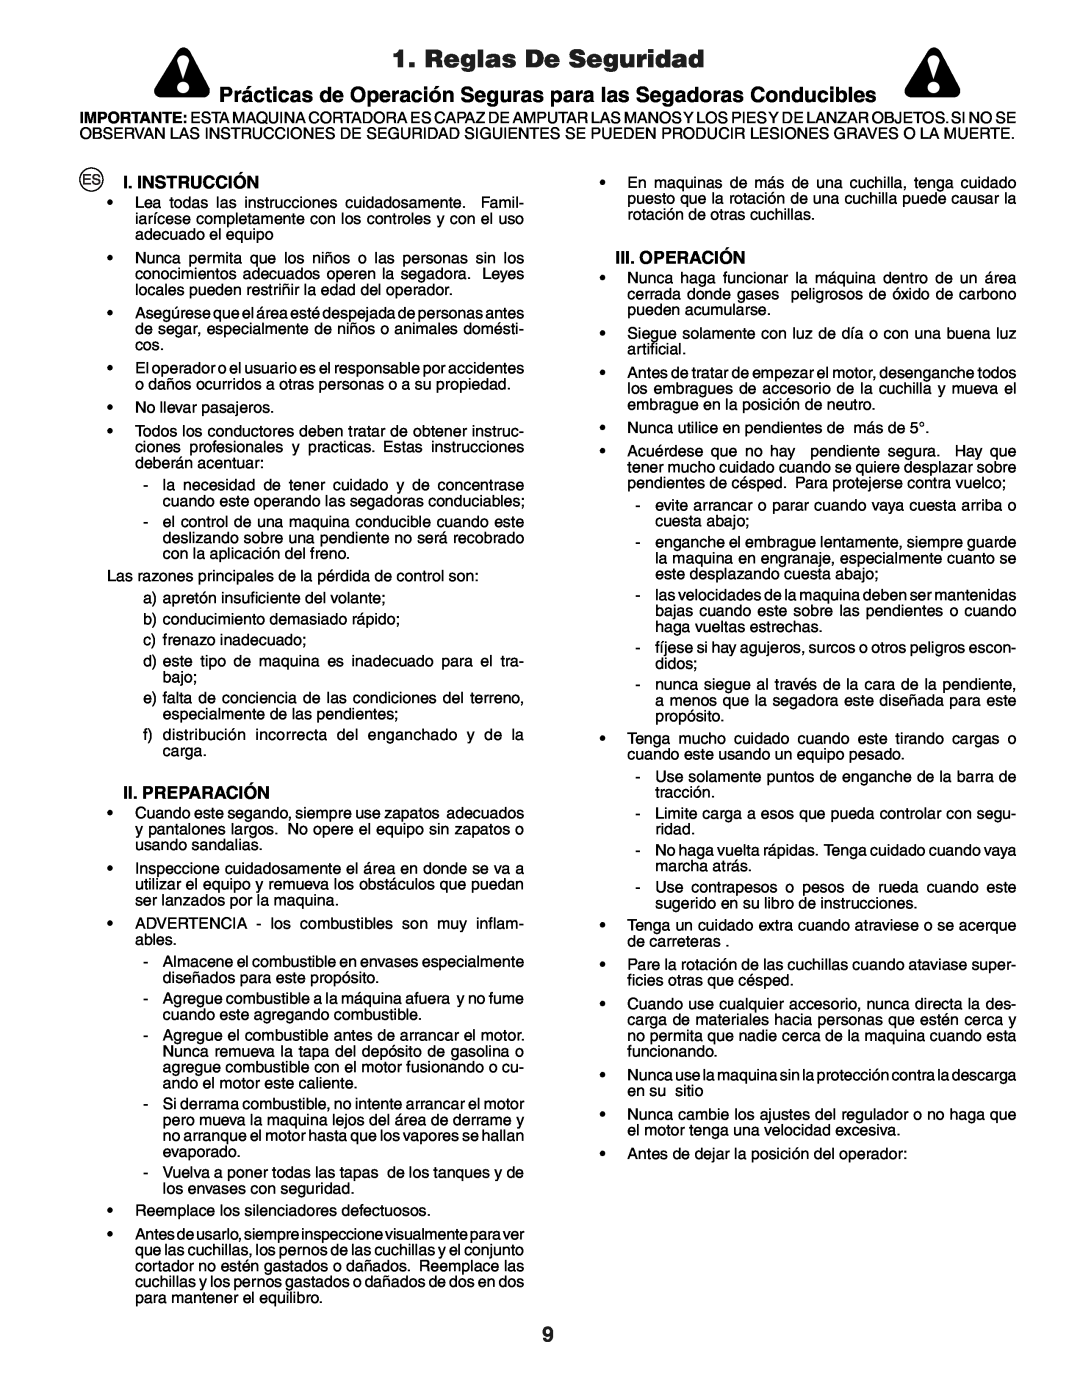 Husqvarna YTH150XP instruction manual Reglas De Seguridad, I. Instrucción, Ii.Preparación, Iii. Operación 